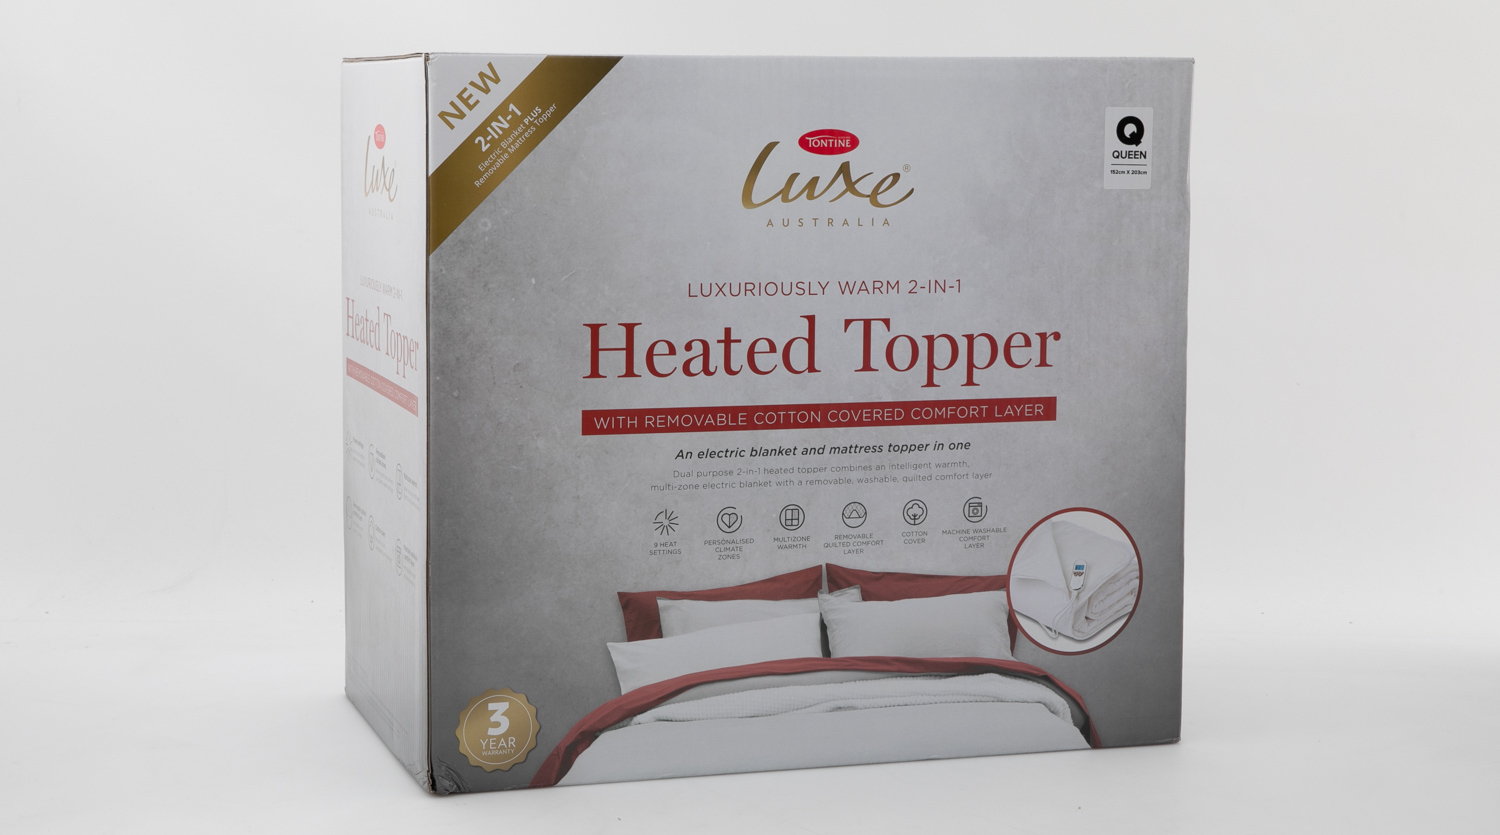 tontine comfortech mattress topper review